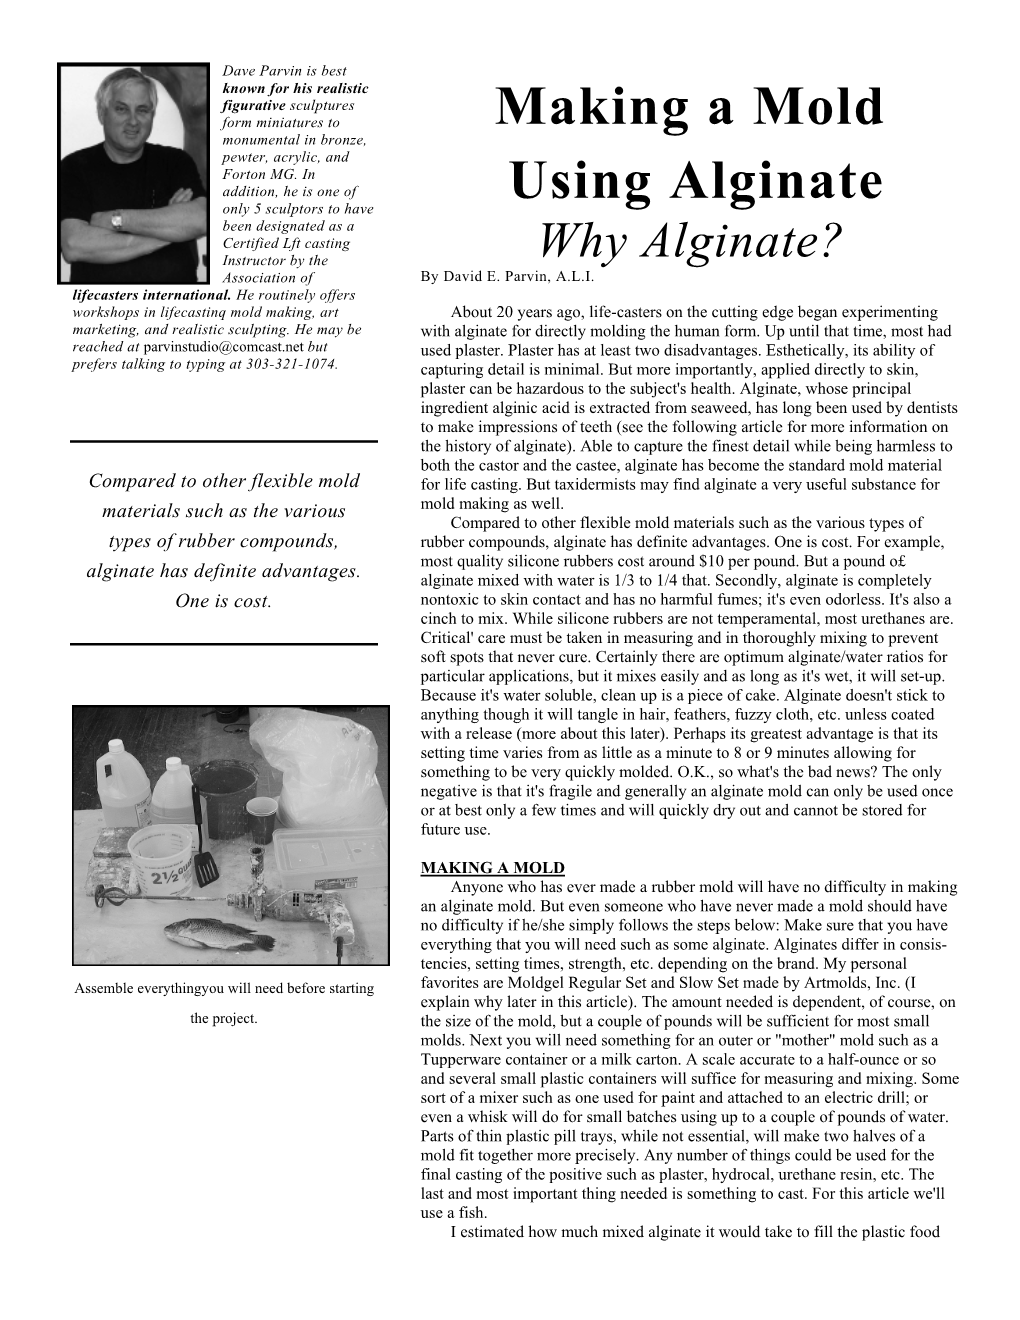 Making a Mold Using Alginate Why Alginate?